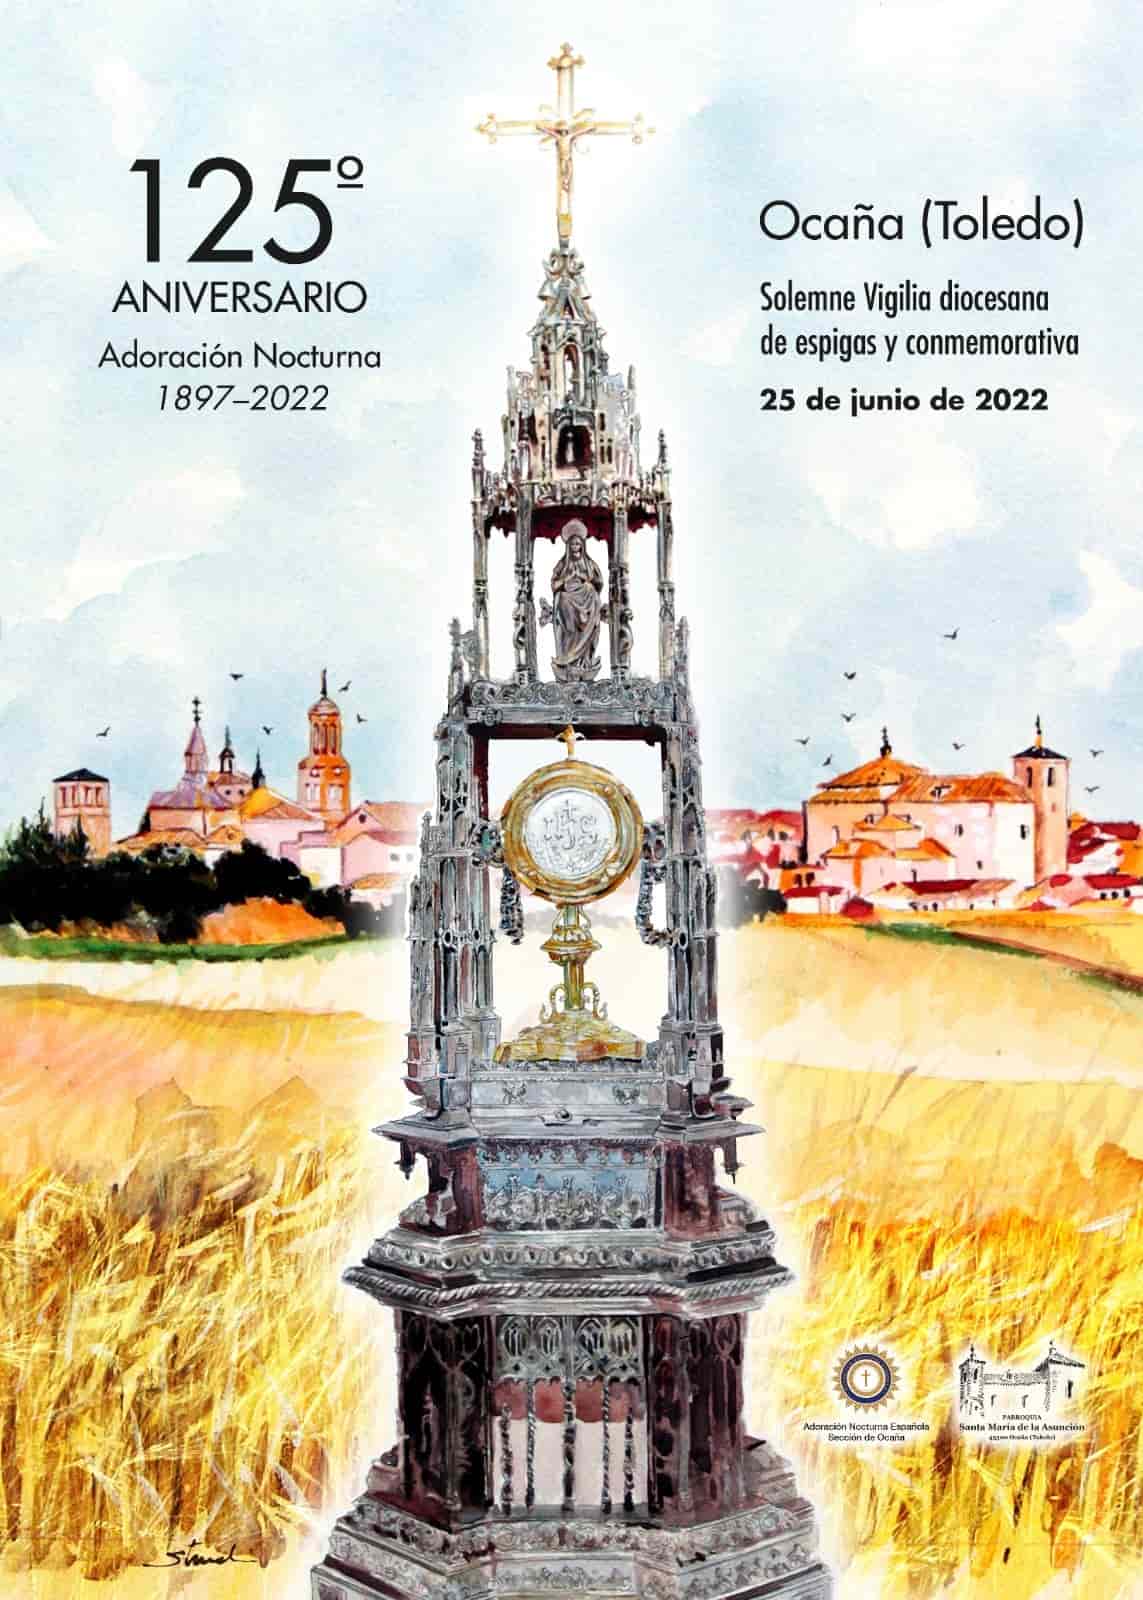 Cartel del 125 aniversario de la Adoración Nocturna de Ocaña. 